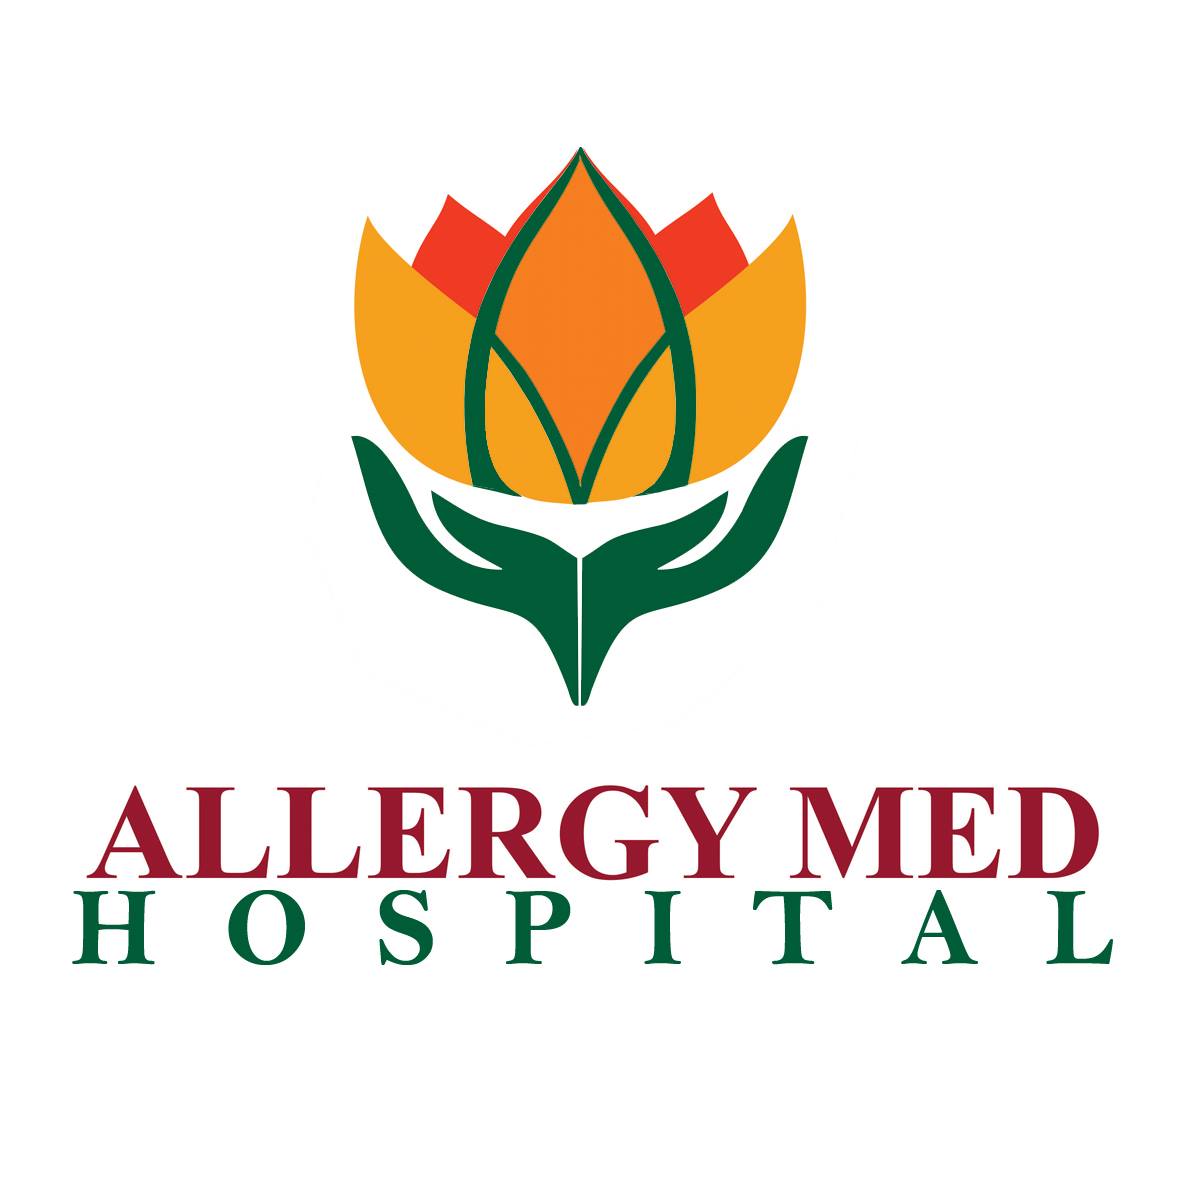 Allergy-Med Hospital